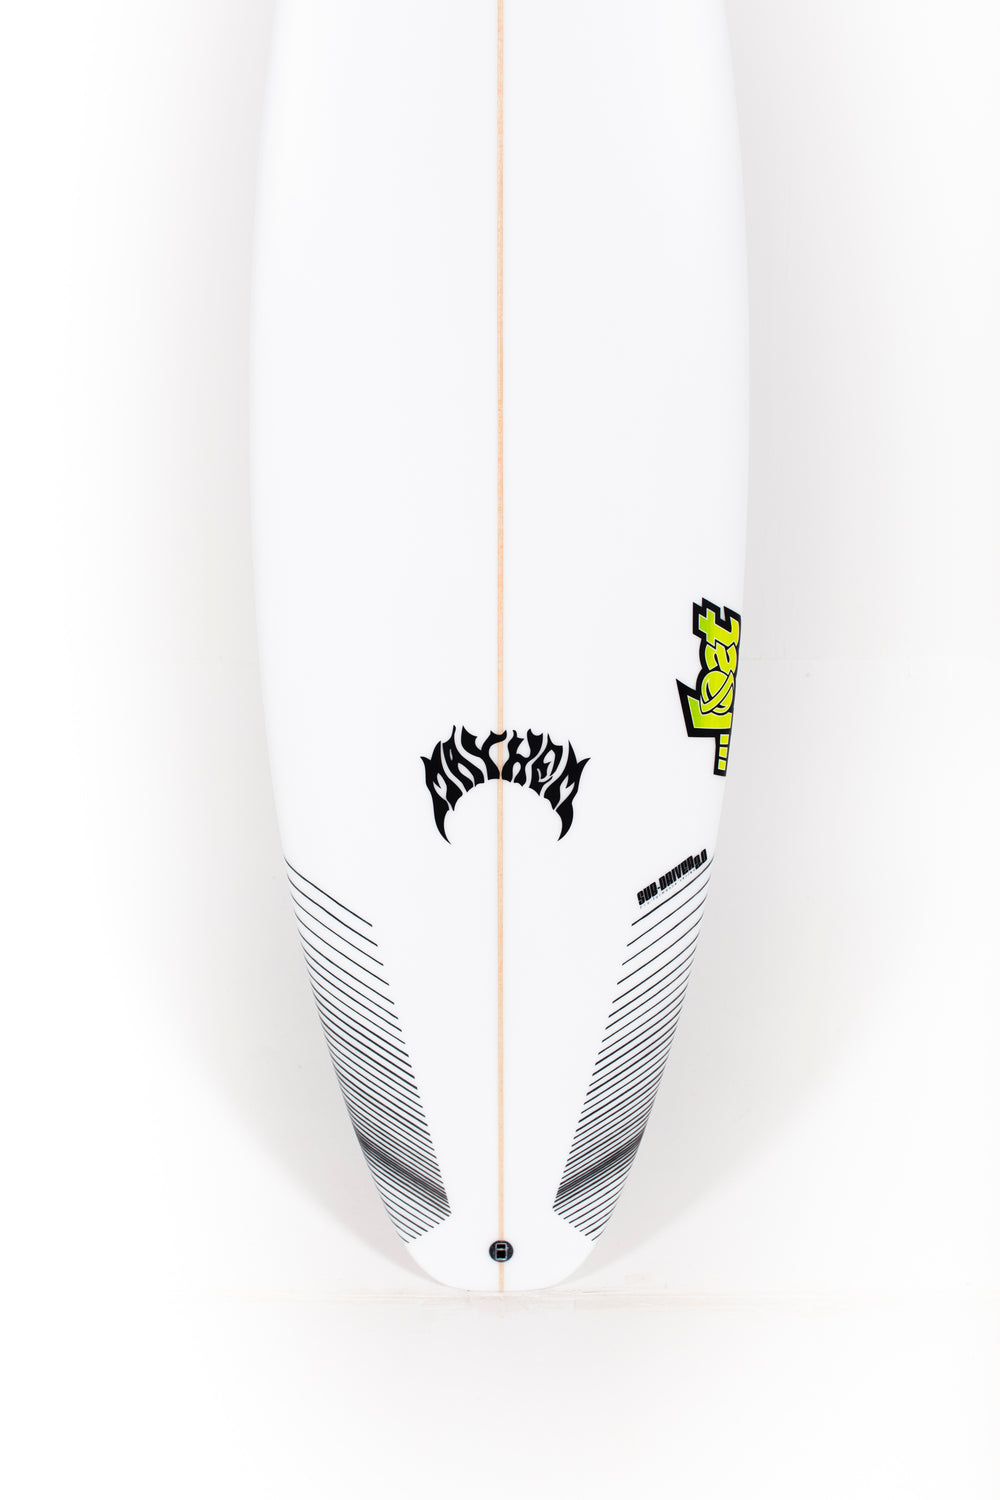 Lost Surfboards - SUB DRIVER 2.0 by Matt Biolos - 6'1” x 19,75 x 2 